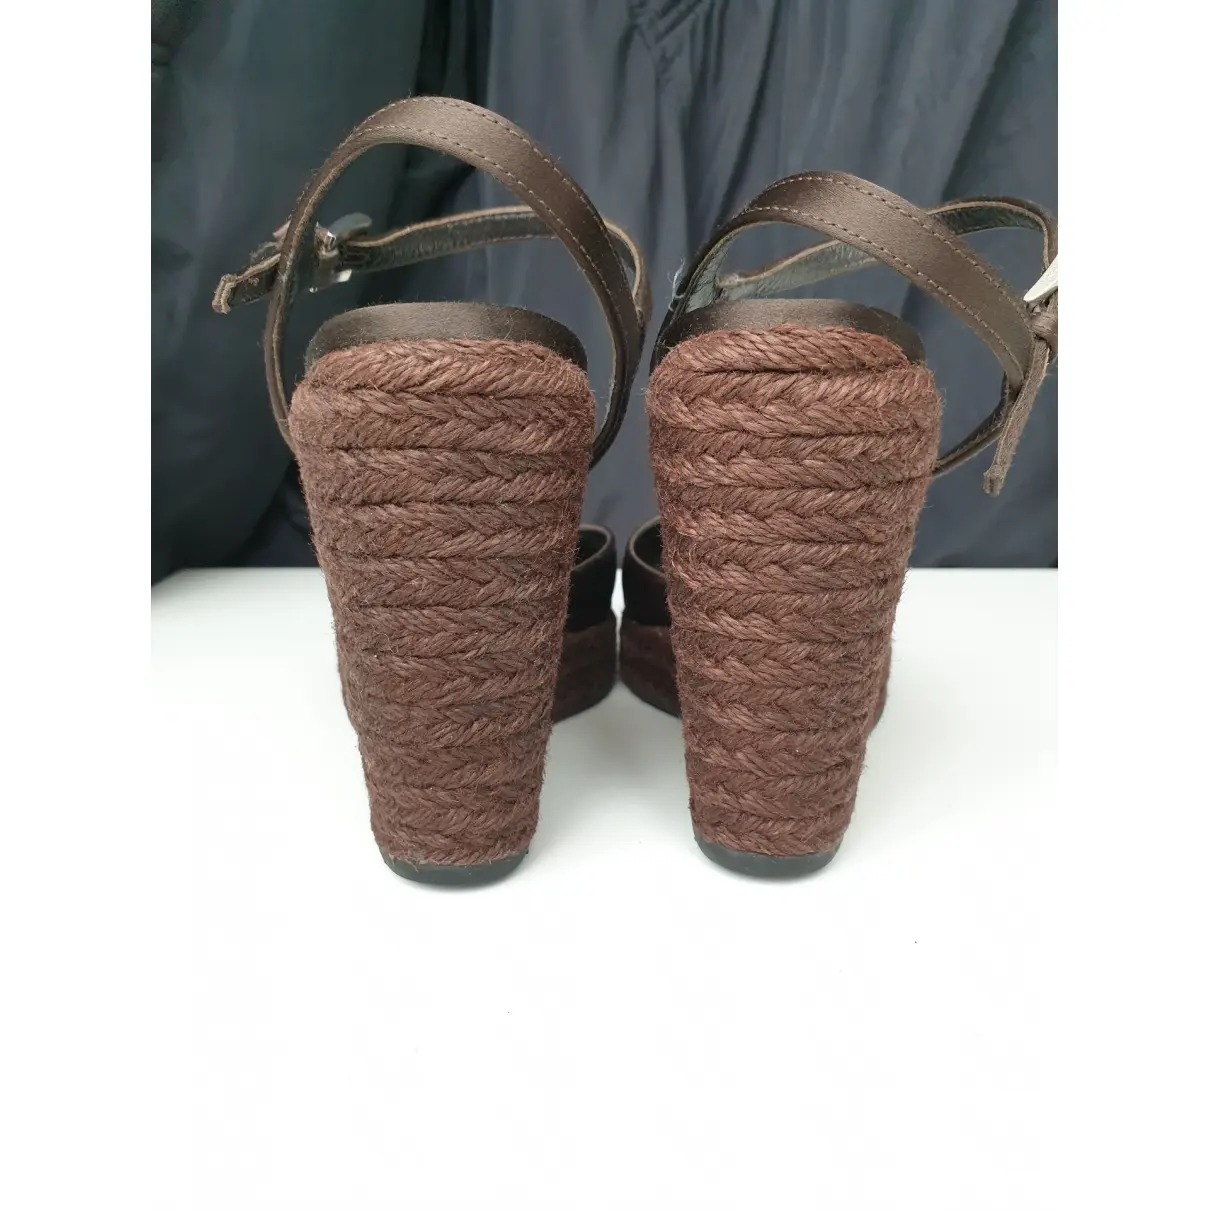 Buy Prada Cloth heels online - Vintage